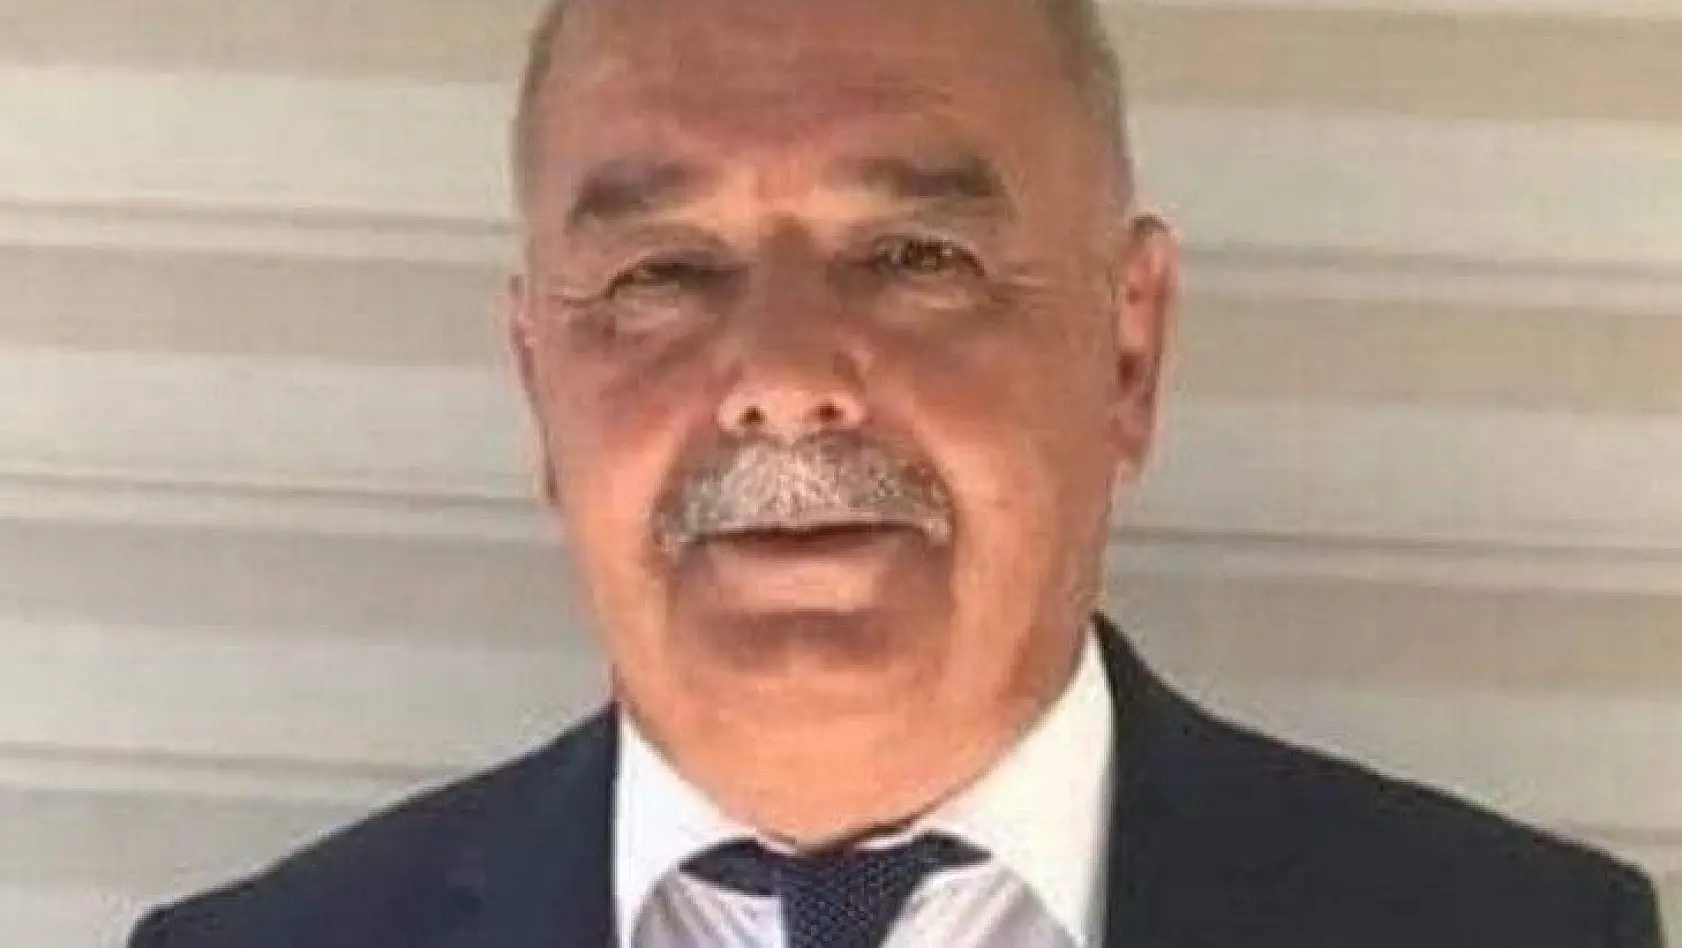 MHP İlçe Başkan Yardımcısı koronadan hayatını kaybetti